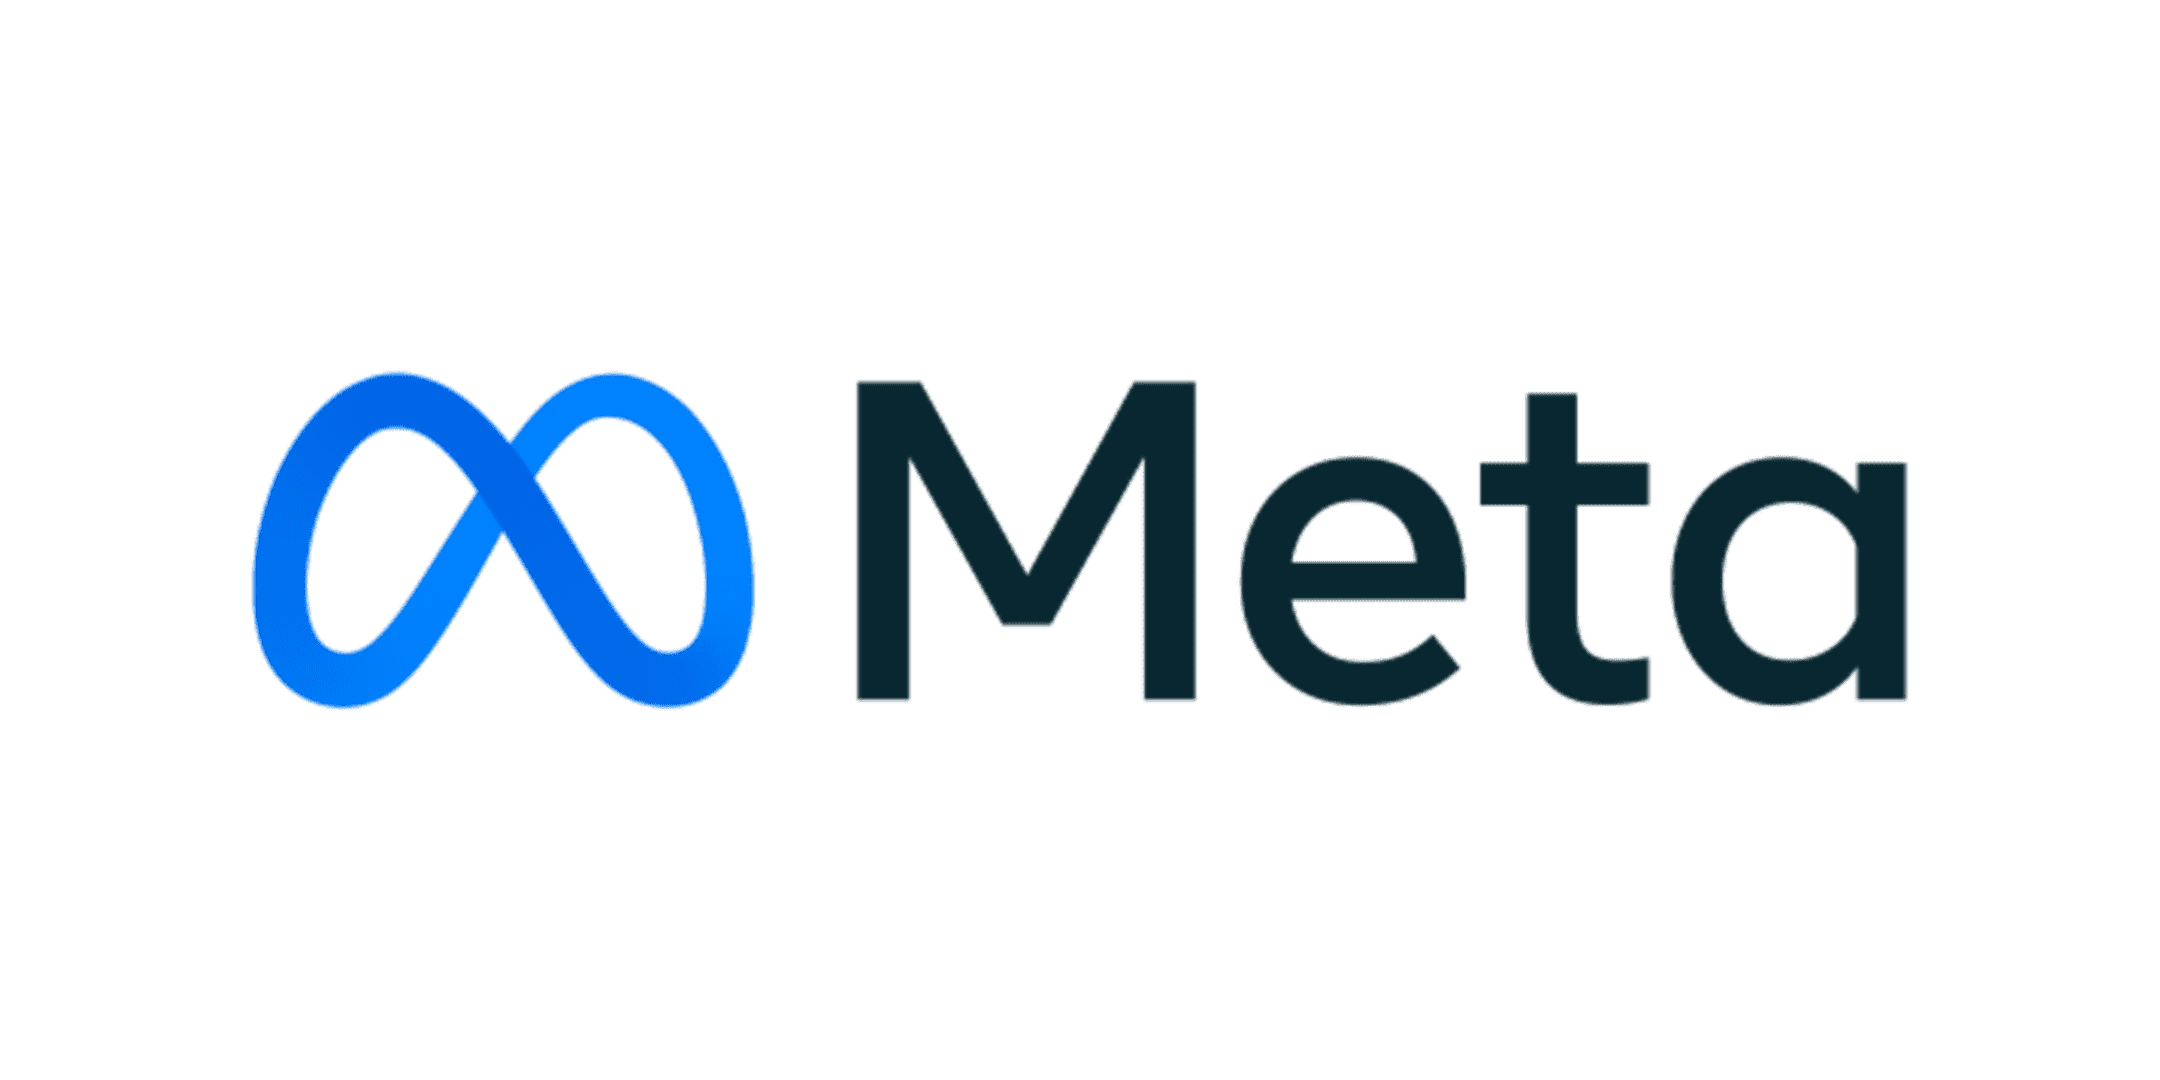 Meta Logo Logo